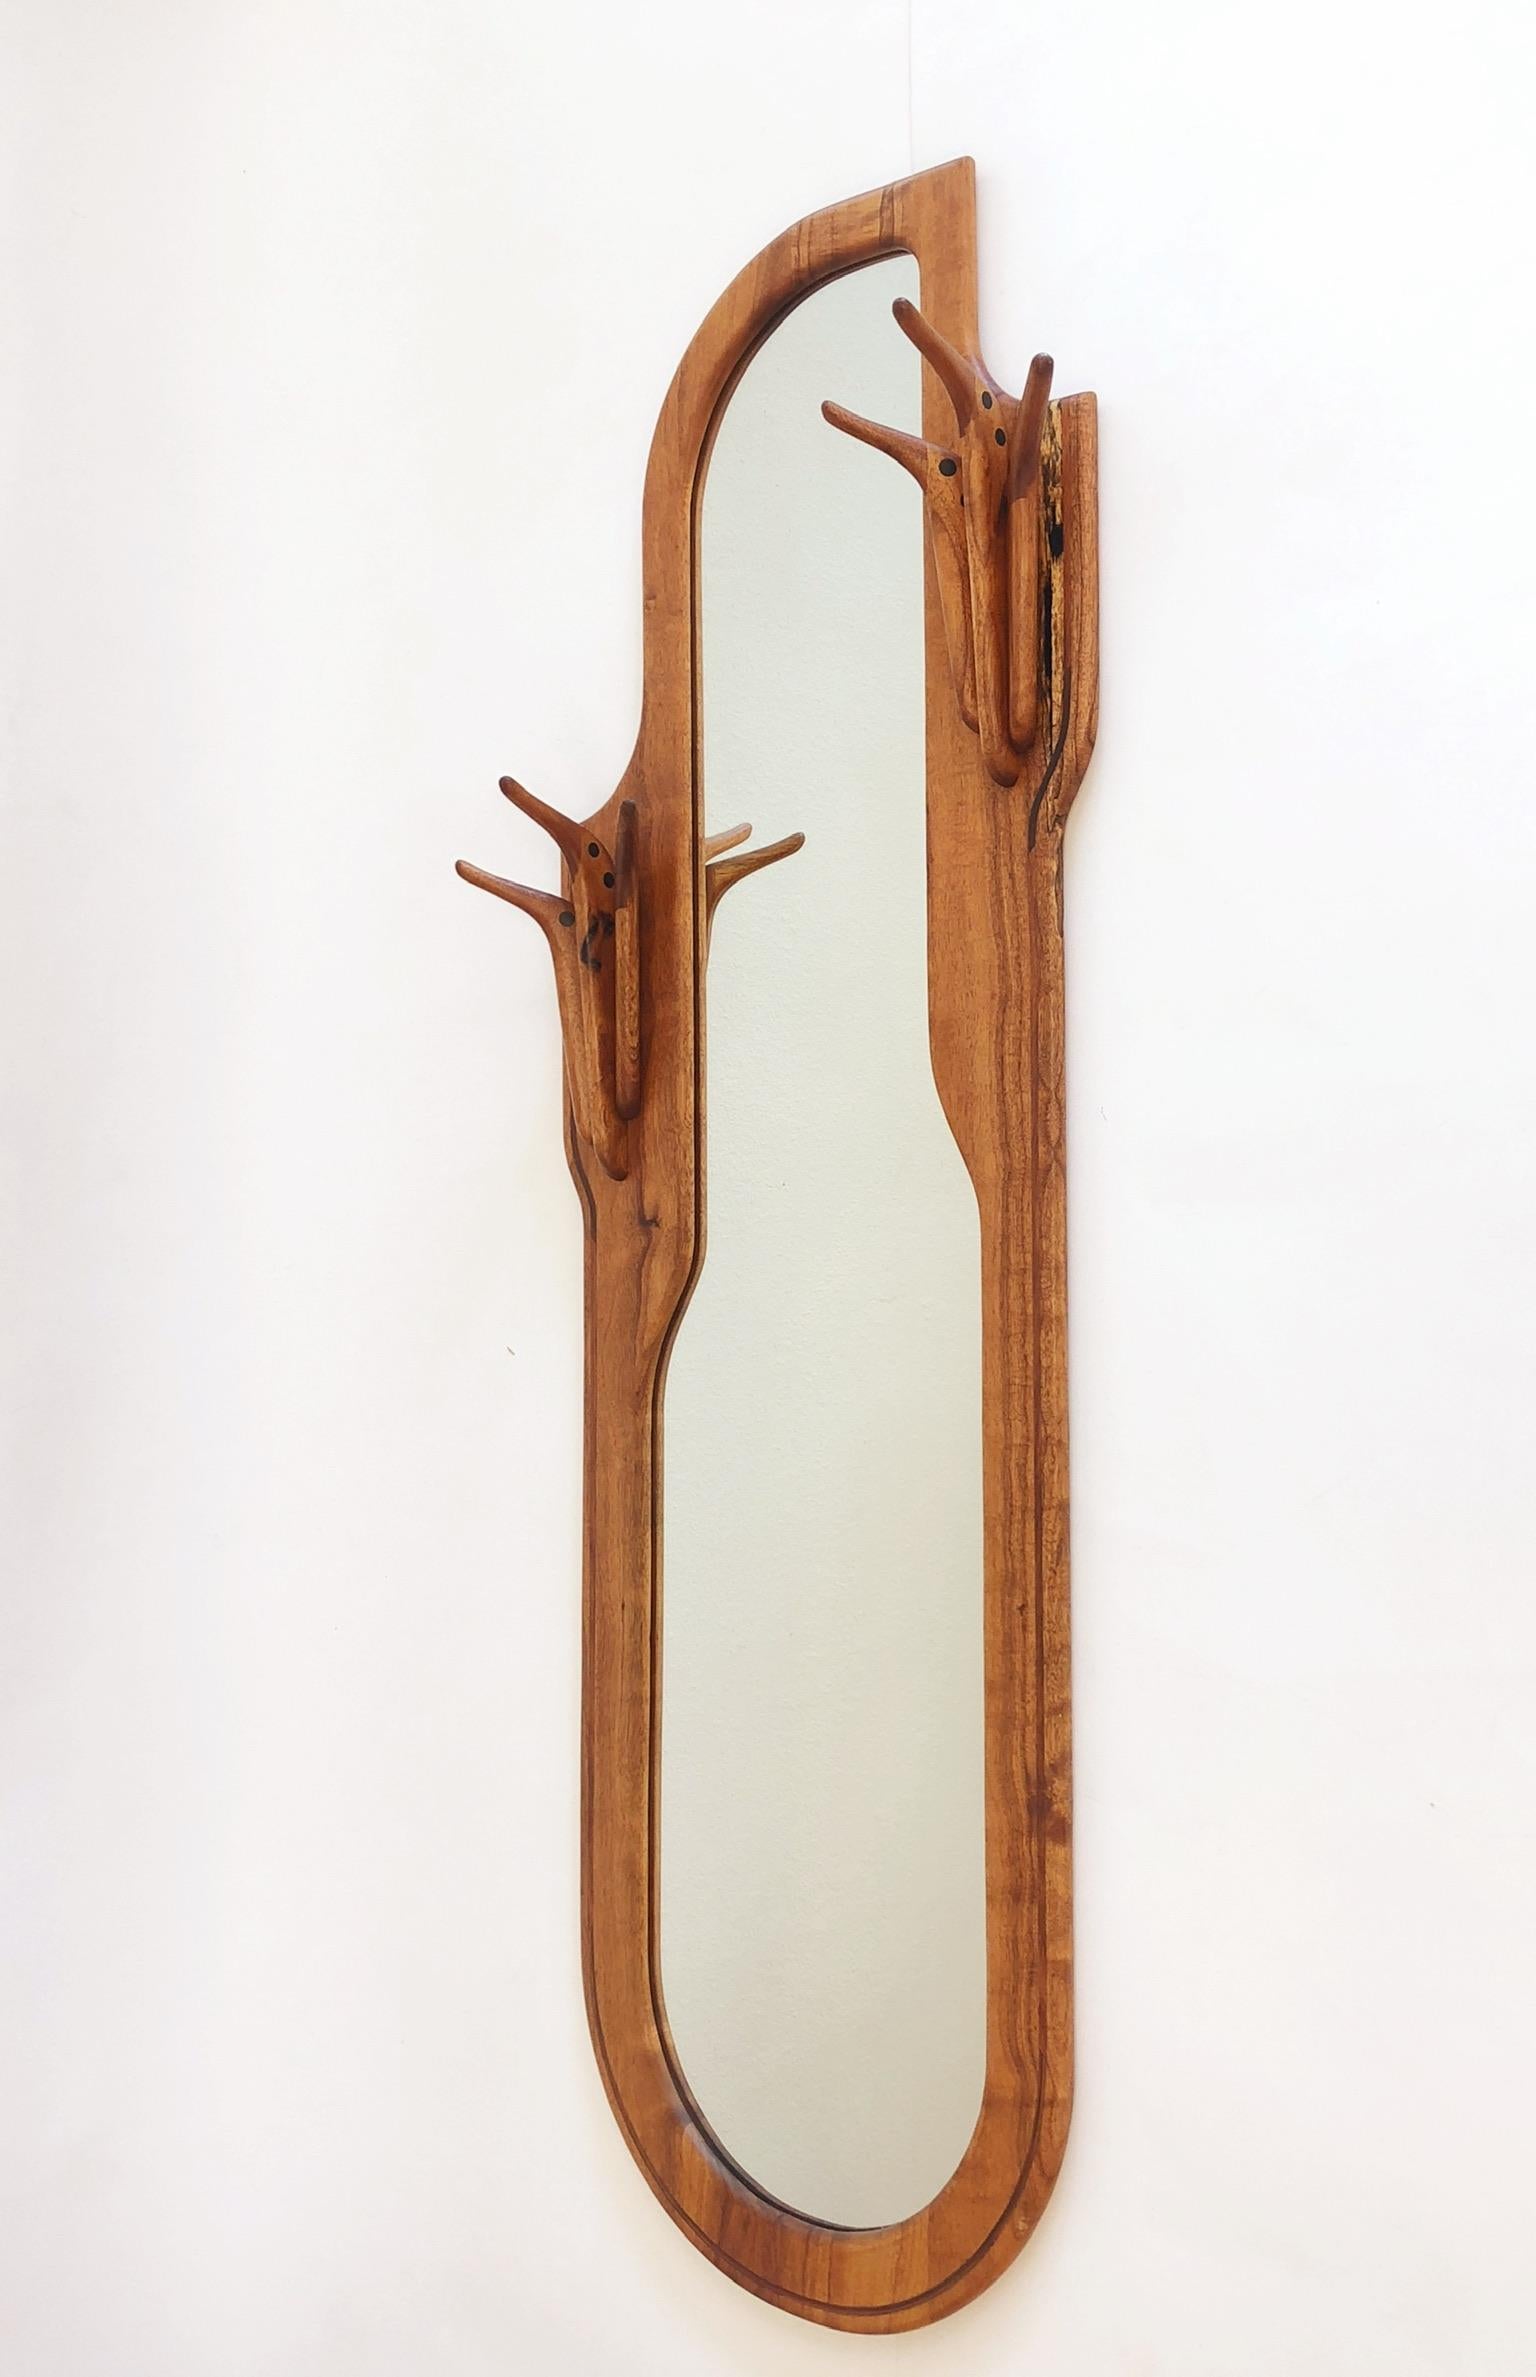 Ein spektakulärer amerikanischer Studio-Handwerker-Spiegel aus Nussbaum mit einem eingebauten Kleiderbügel. Der Spiegel ist signiert mit Charles B. Cobb und datiert 1976.
Gesamtabmessungen: 65